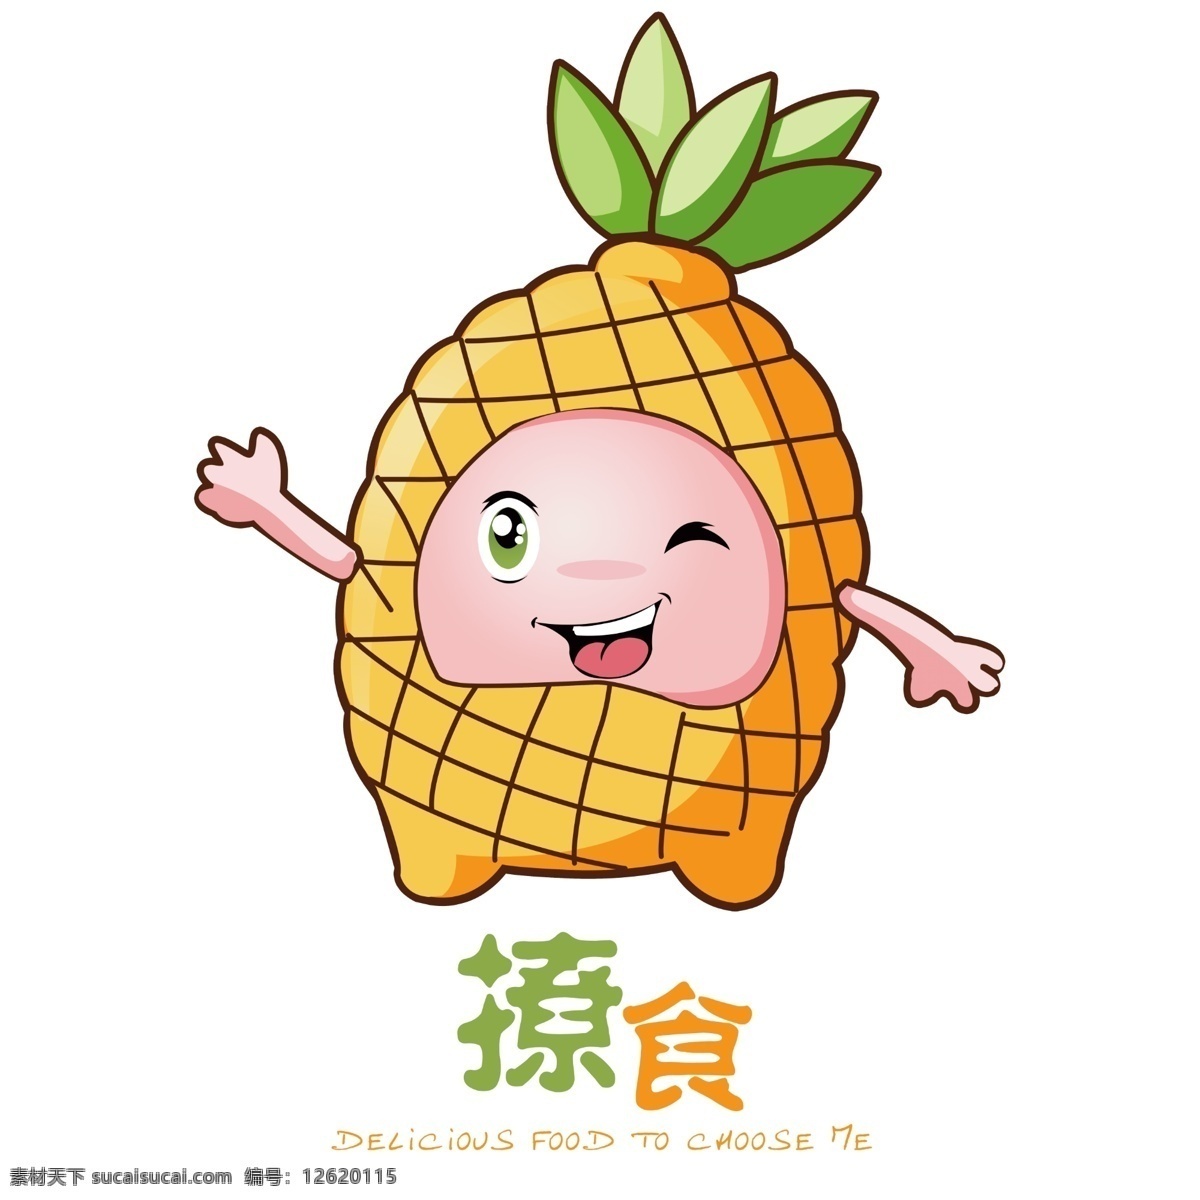 食品 logo 食品logo logo设计 果蔬营养 水果 果蔬 菠萝卡通图案 可爱 果蔬logo 淘宝设计 白色